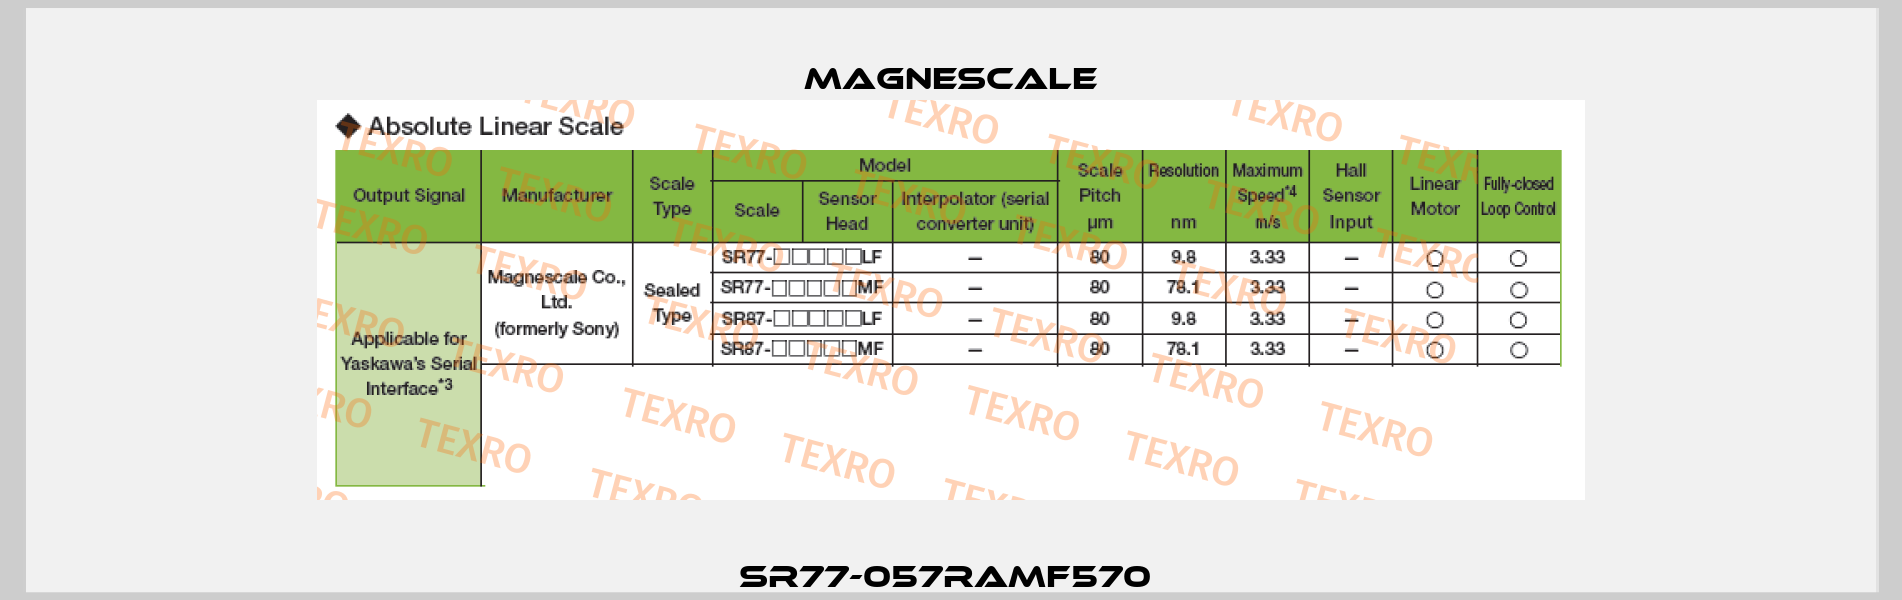 SR77-057RAMF570  Magnescale